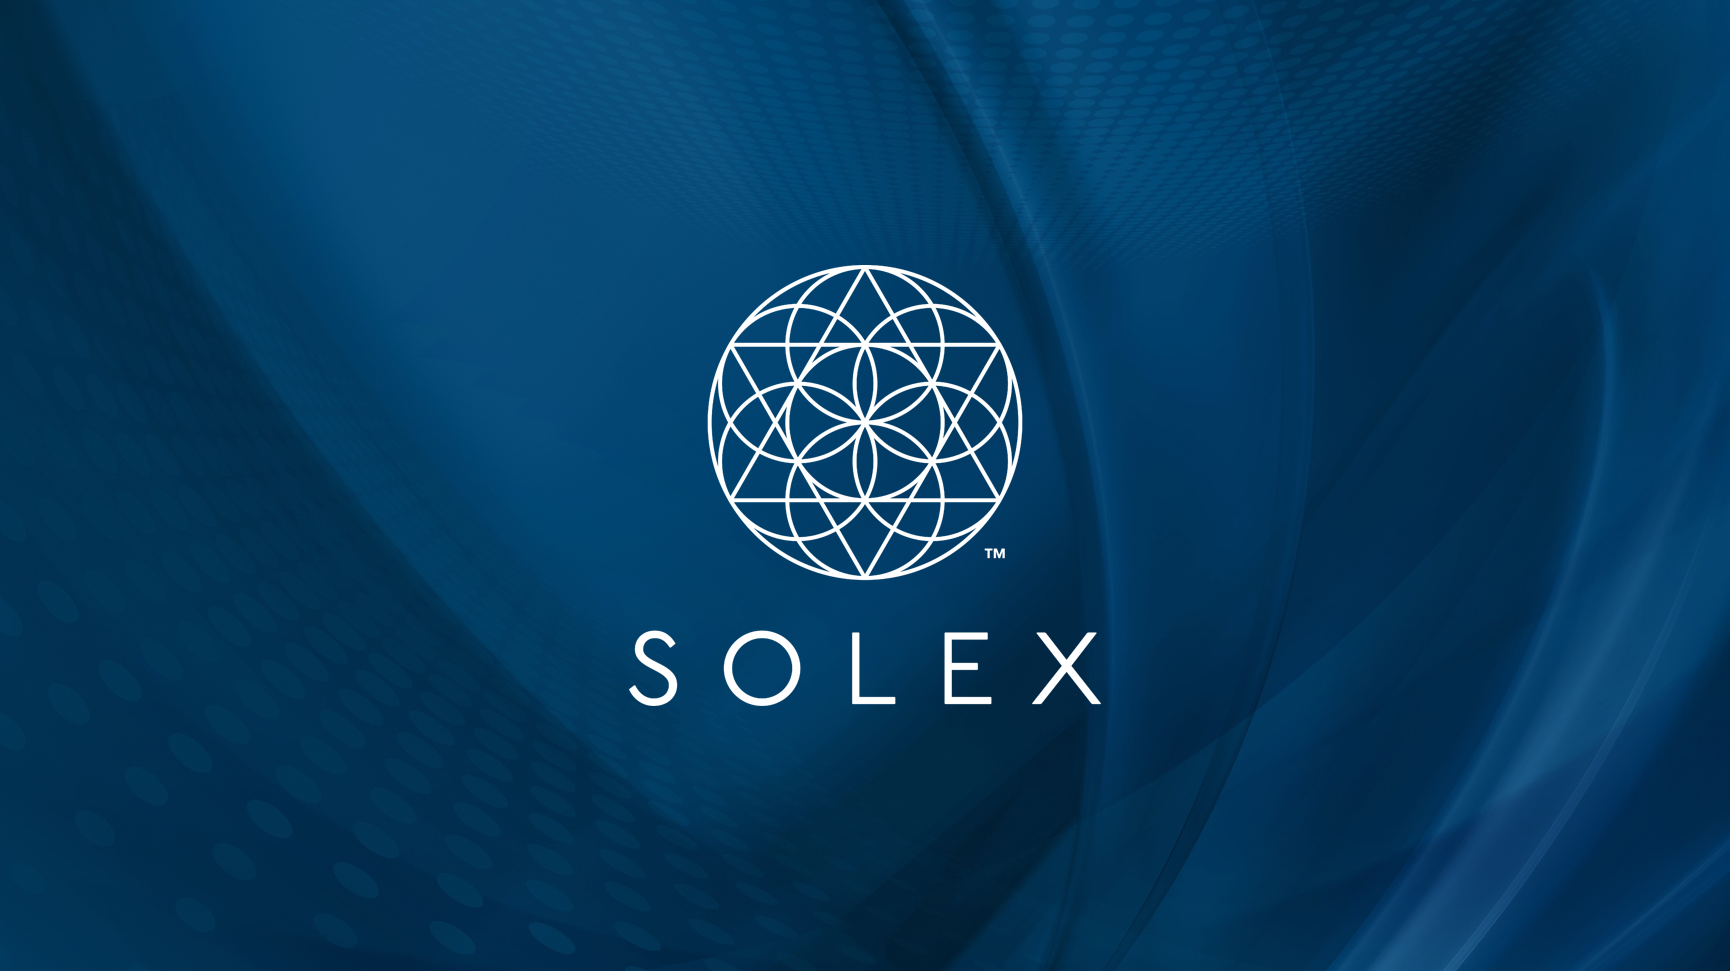 Solex Presentation - Slide22.png